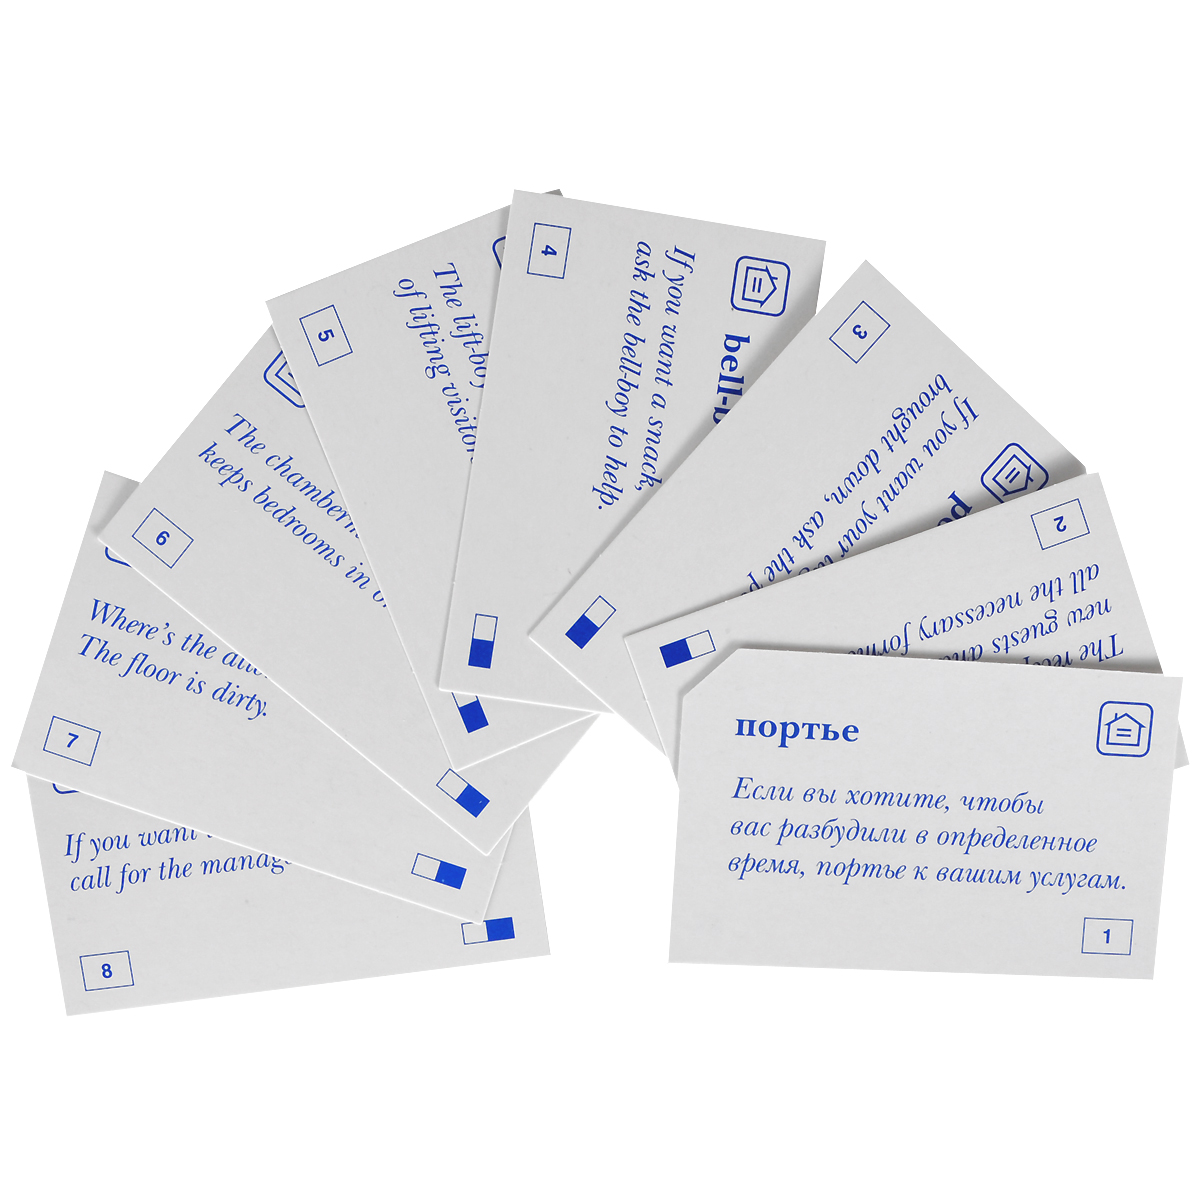 Карточки английский купить. Разговорный практикум 420 карточек английский. Карточки для запоминания. Карточки для изучения иностранных слов. Карточки для изучения английского.